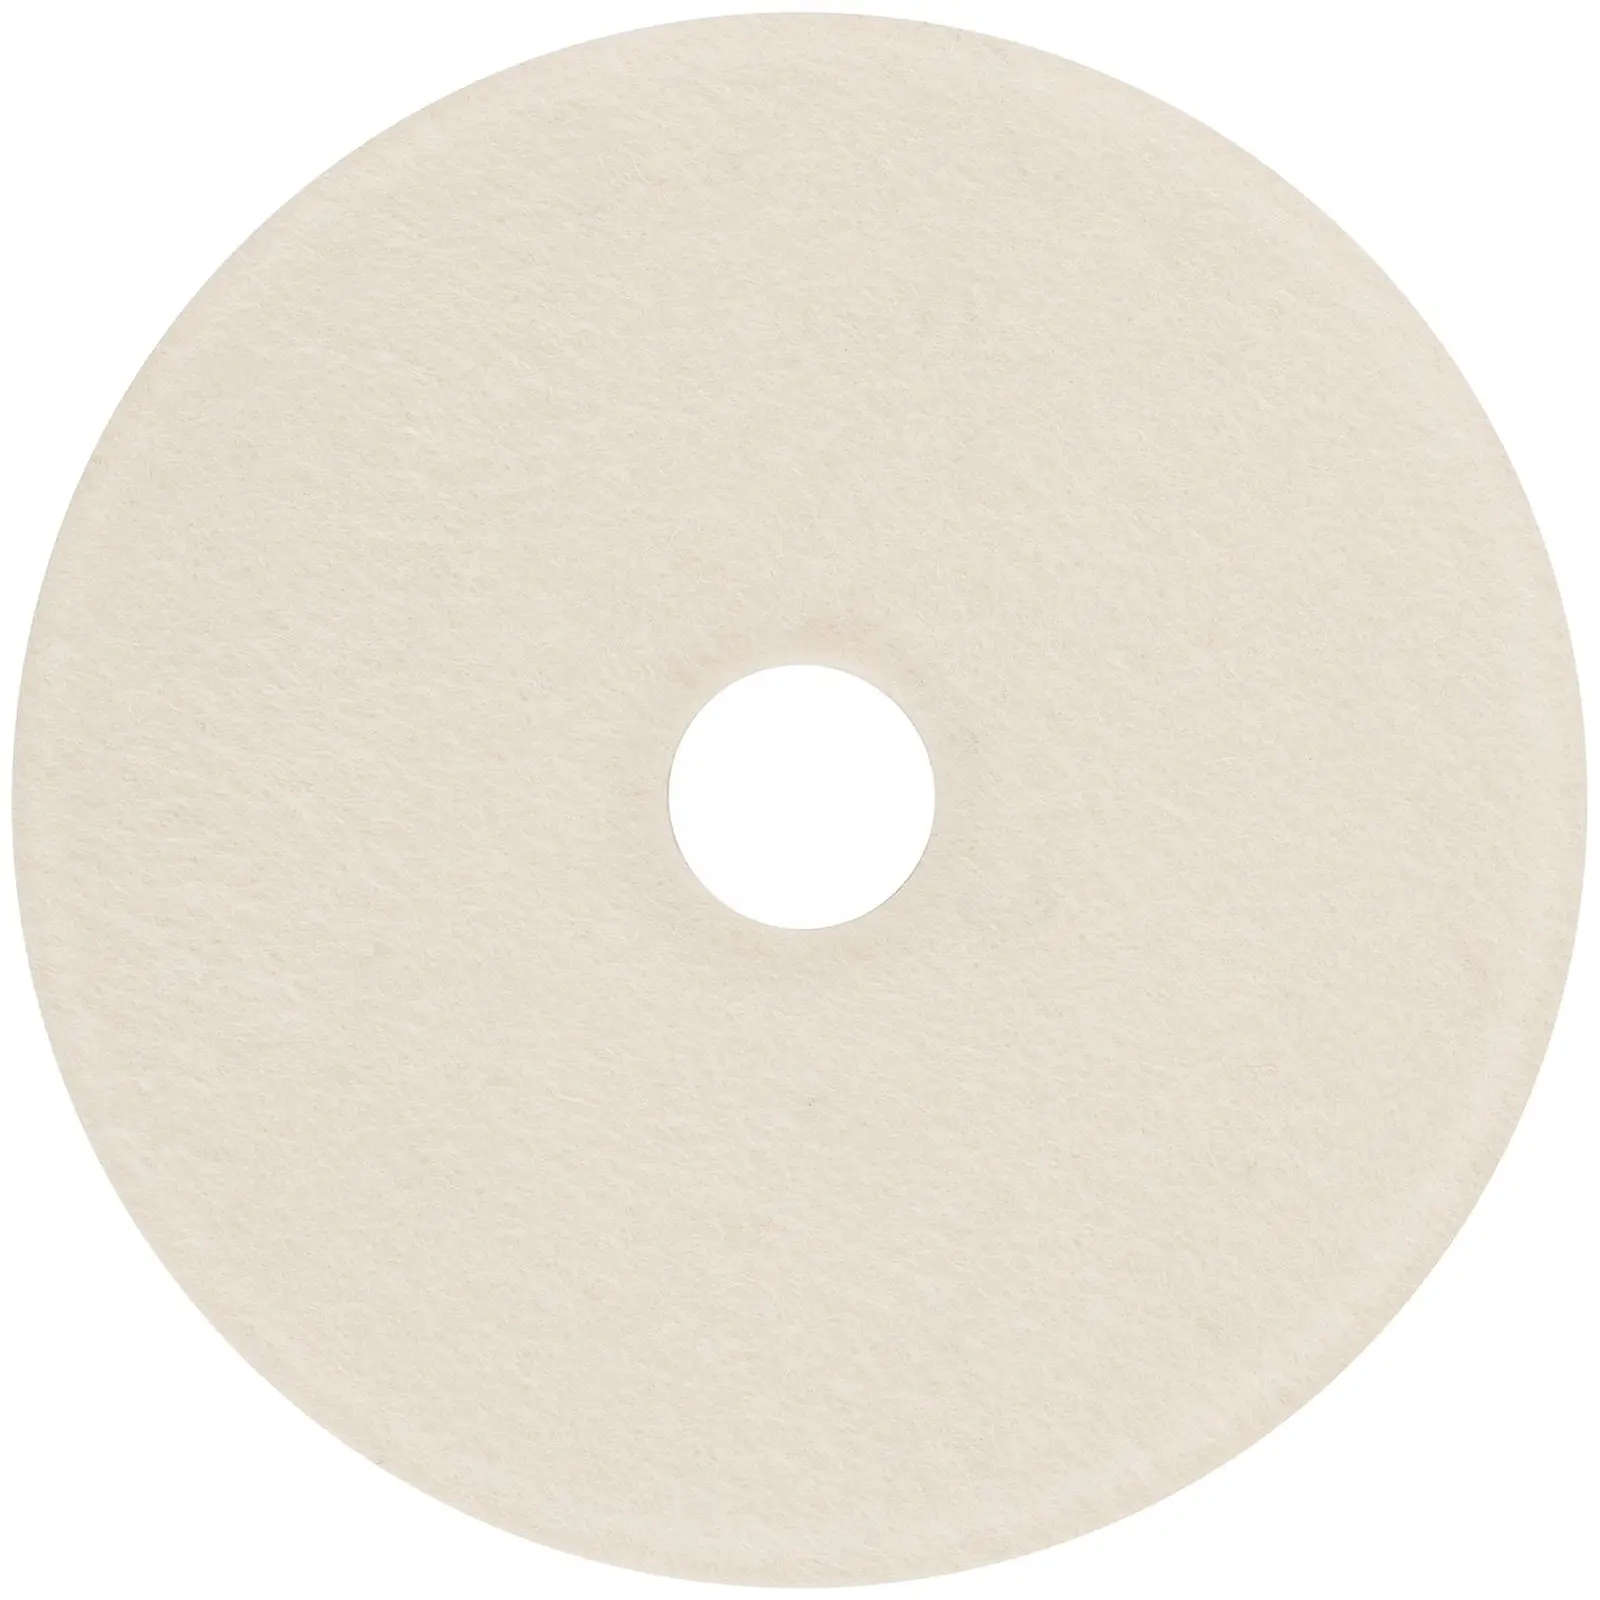 Set of 5 Polishing Discs - Ø 150 mm - fleece